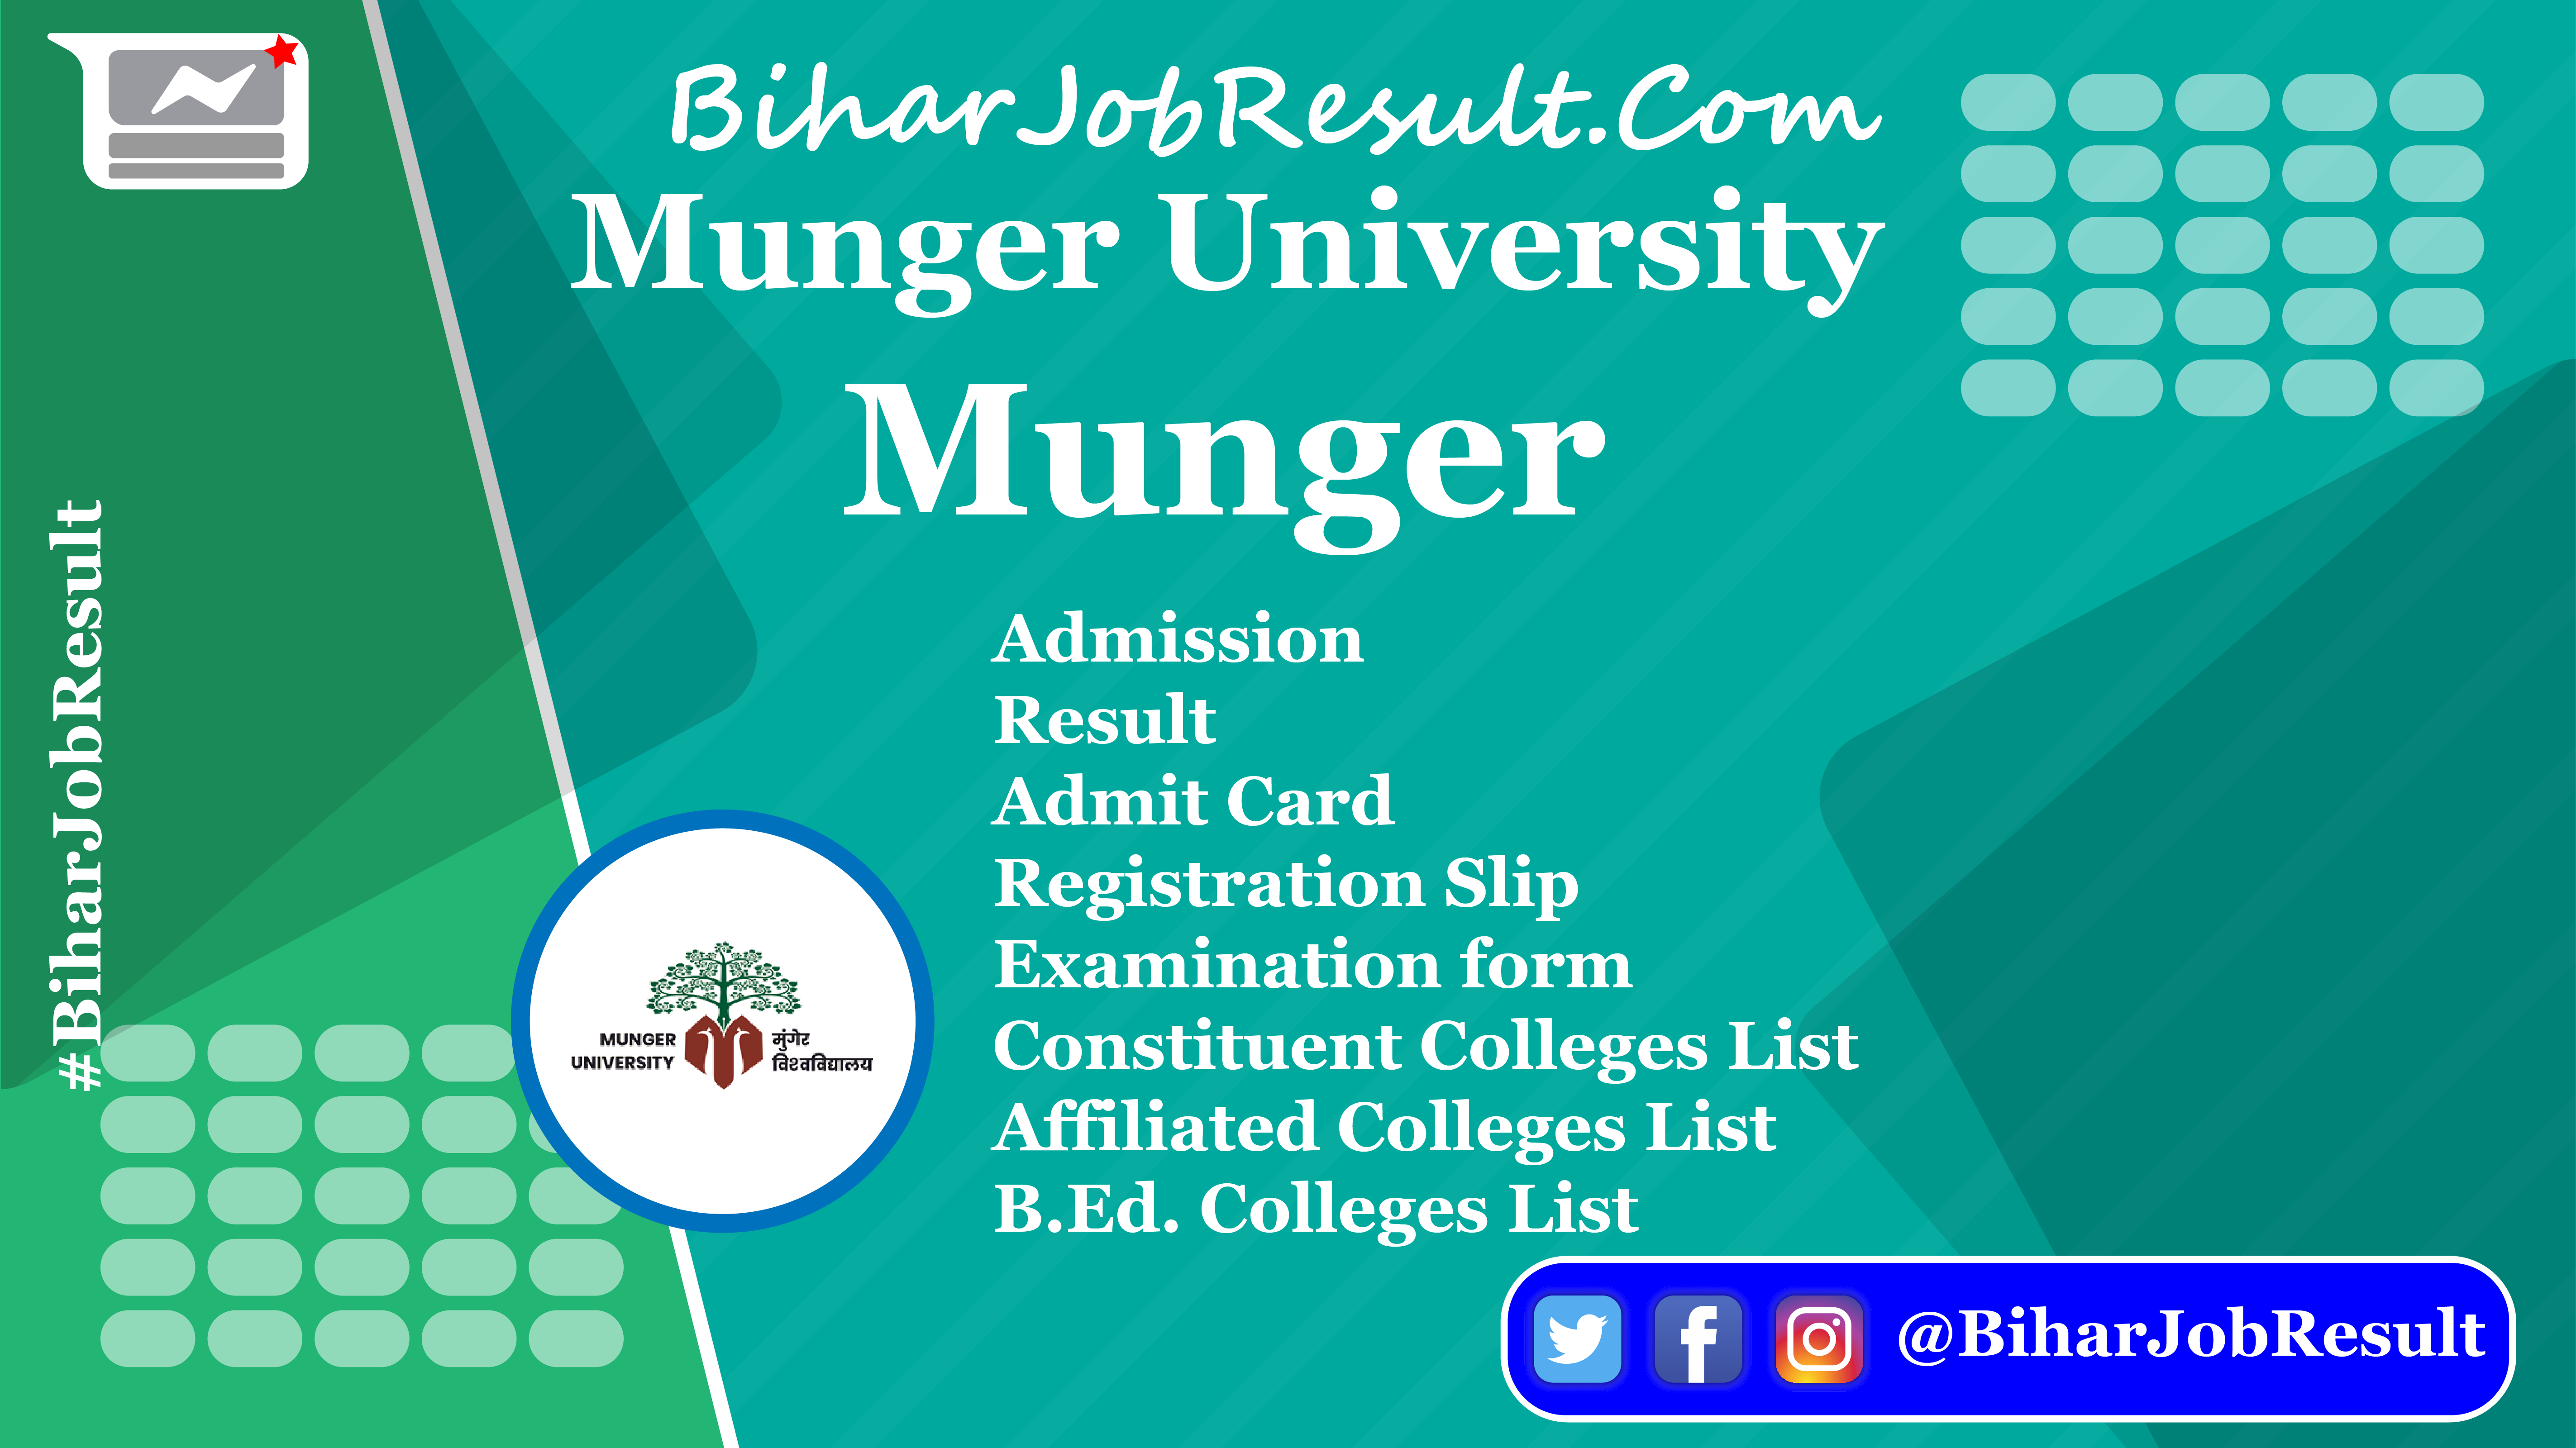 Munger University, Munger